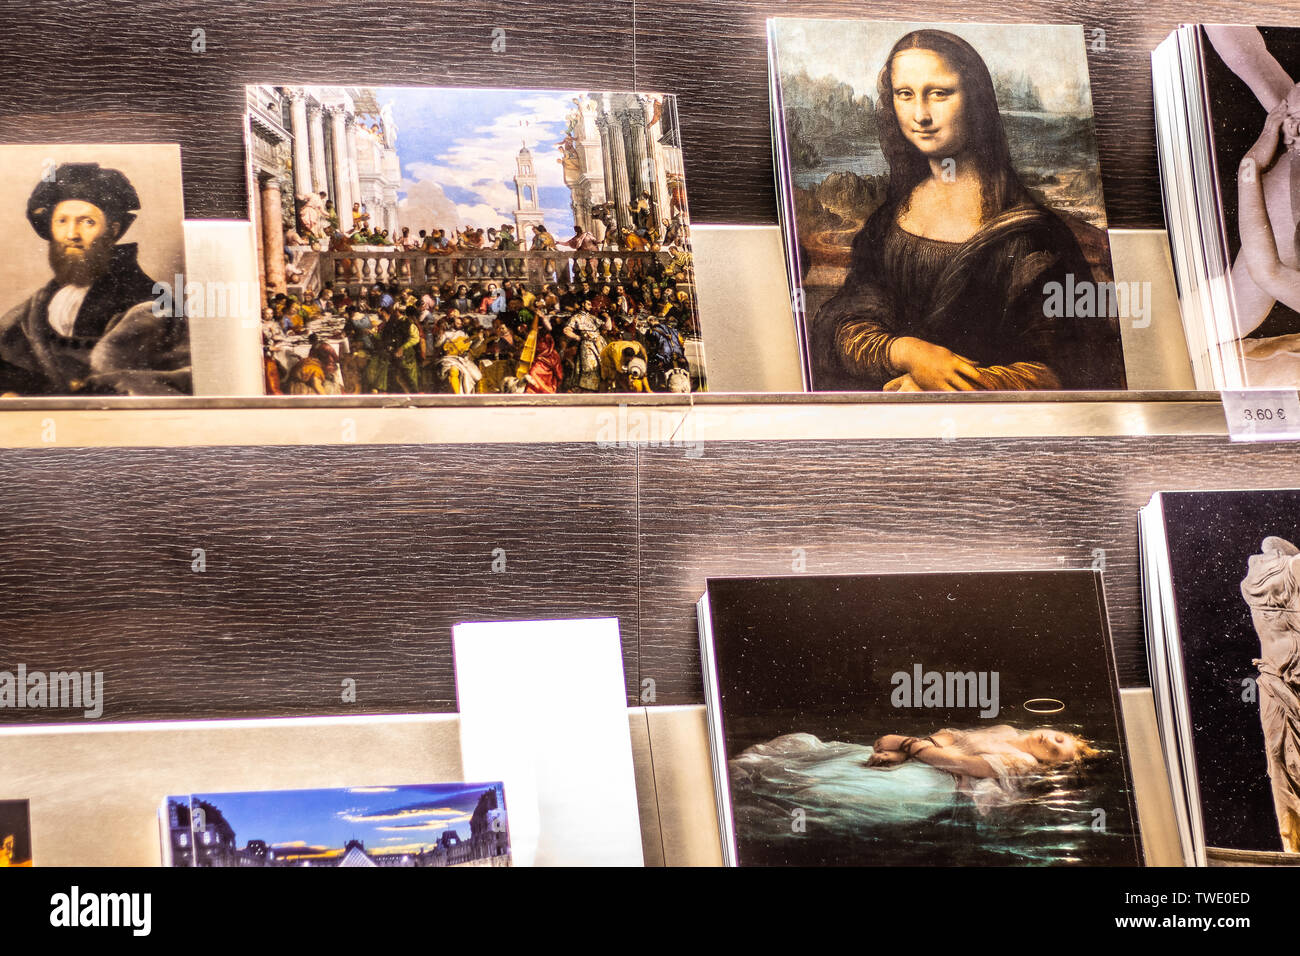 Paris, France, October 07, 2018: Louvre Museum, souvenirs for sale, tourist loot of famous painting Mona Lisa La Gioconda Leonardo da Vinci Stock Photo